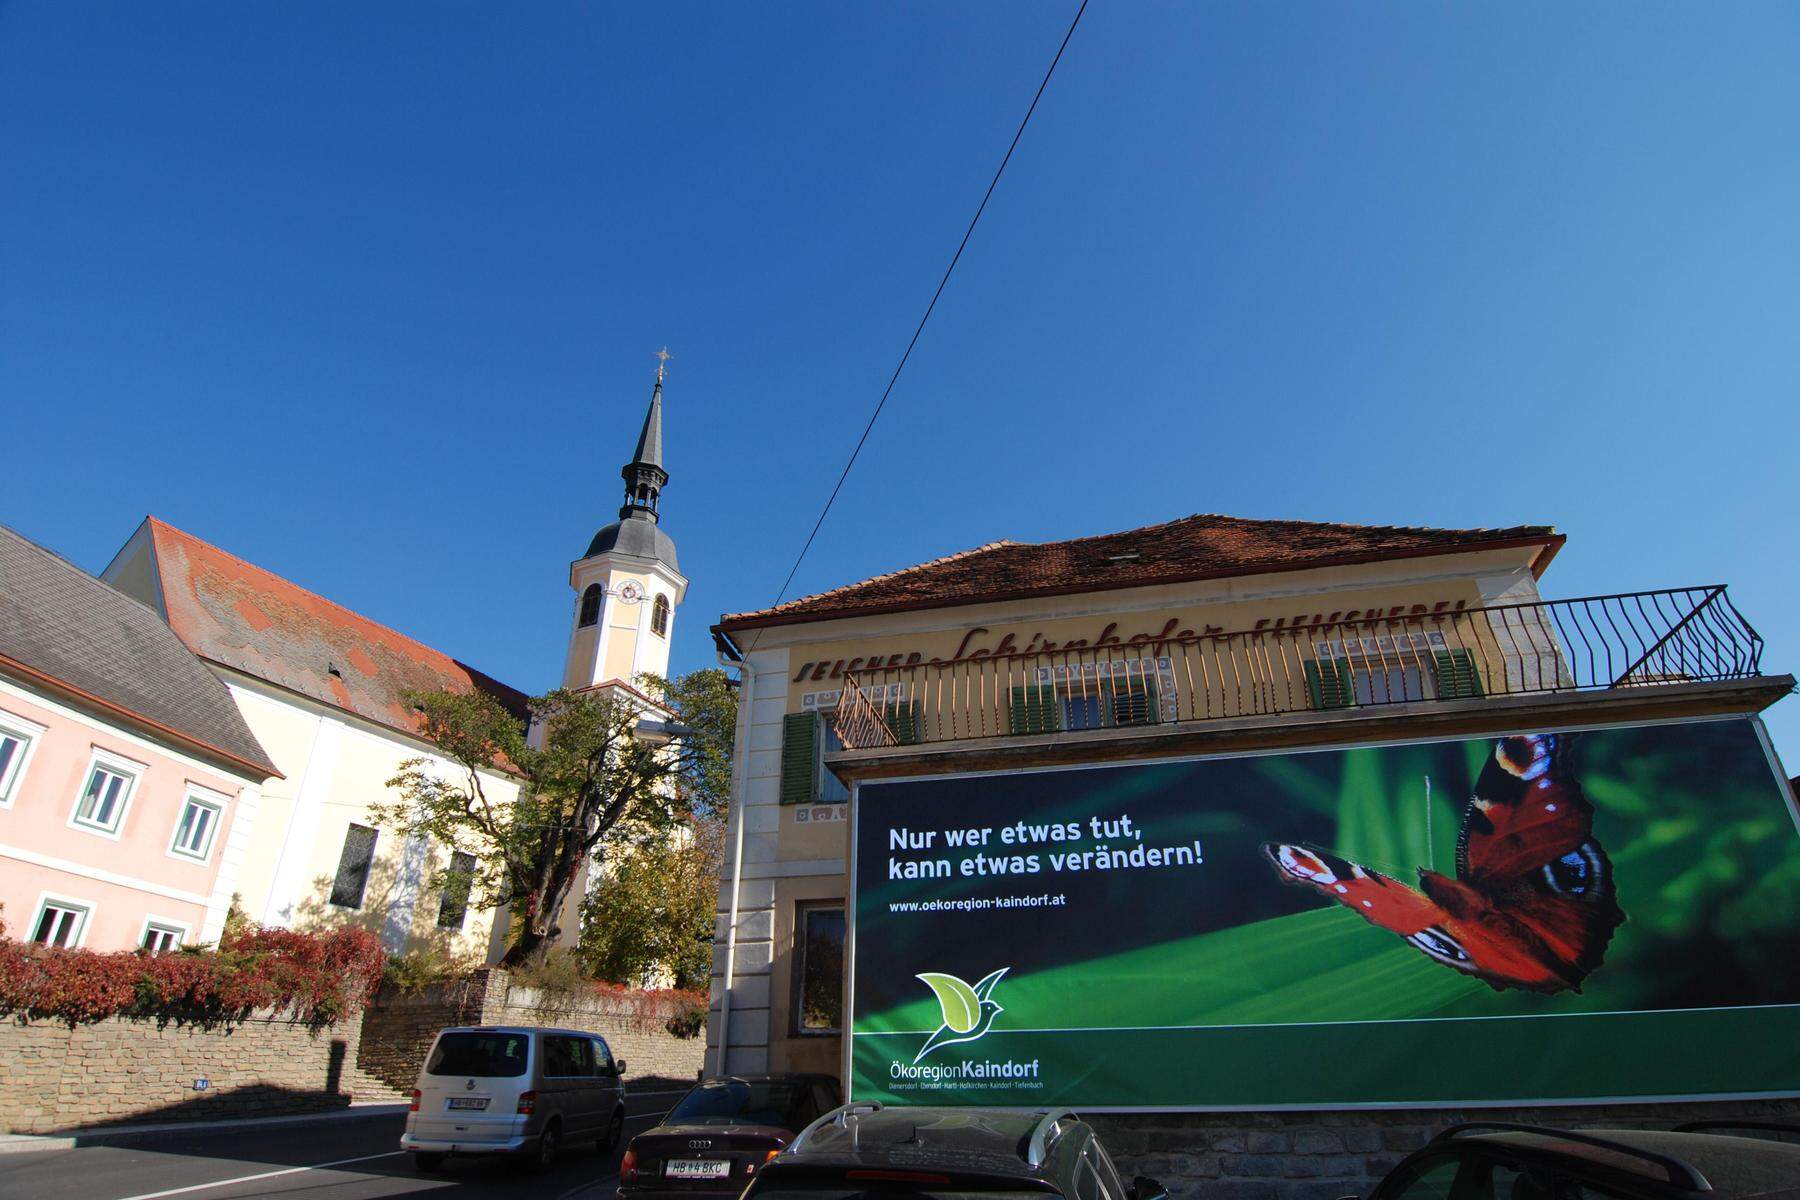 Humus+Tage in Kaindorf | Wie sich Landwirtschaft und Klimaschutz vereinbaren lassen